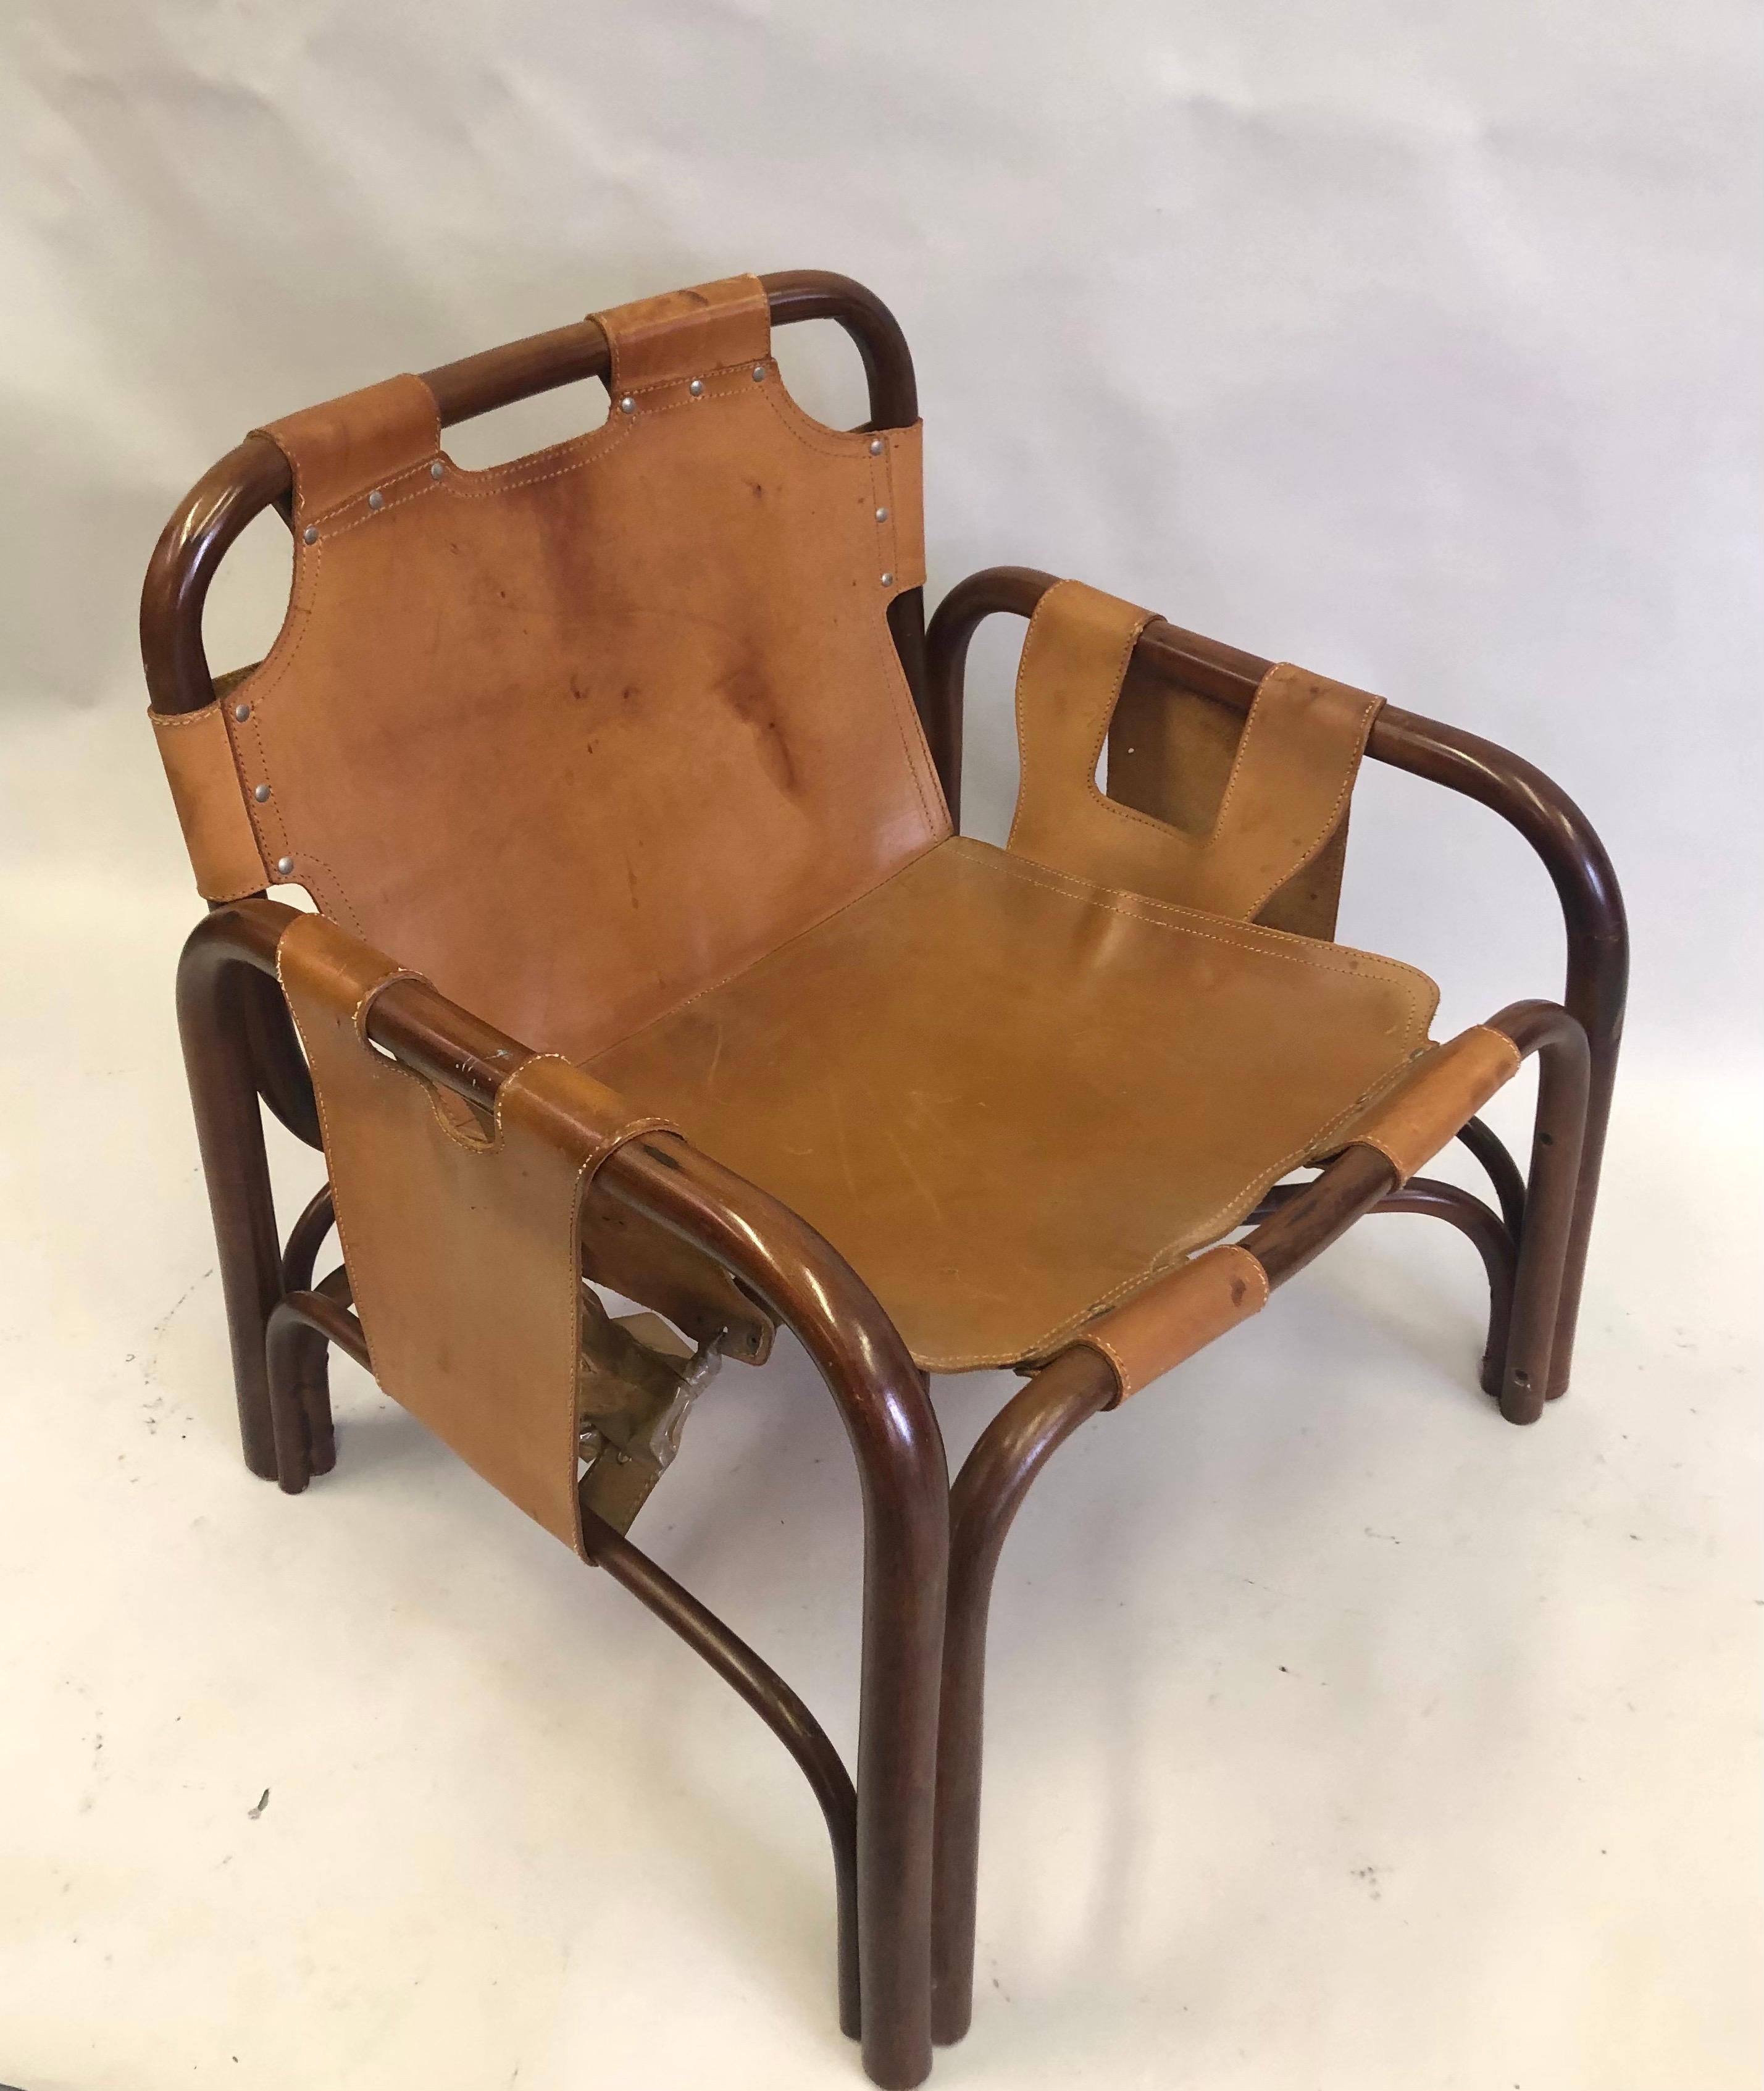 Elégante paire de chaises longues en bambou, rotin et cuir de vachette cousu à la main dans le style du maître français Jacques Adnet et Hermès. Les chaises sont construites sur un cadre en bambou et en rotin et luxueusement recouvertes de cuir